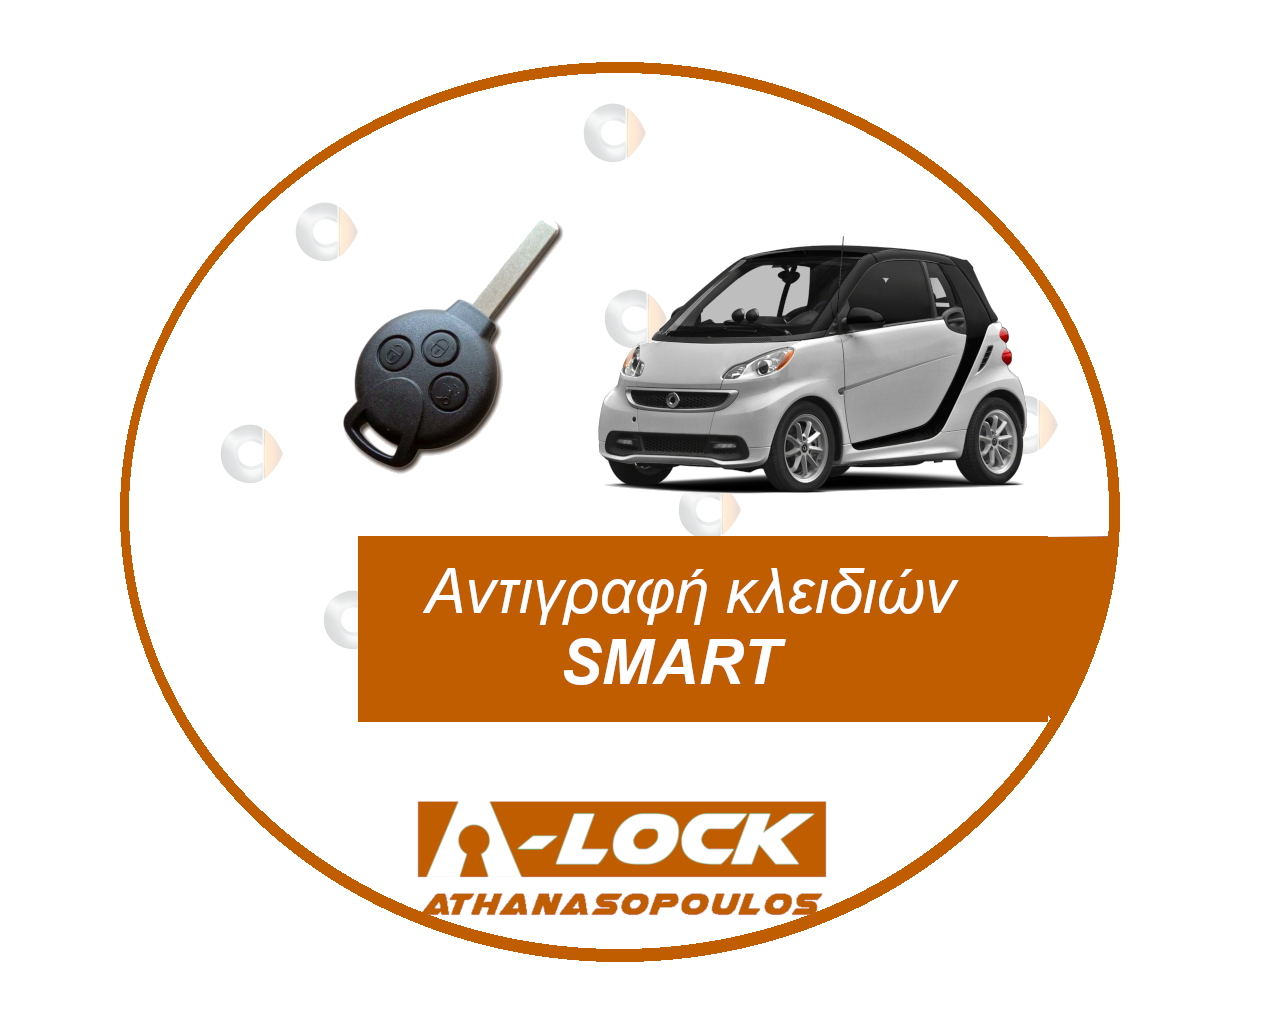 Αντιγραφές Κλειδιών Immobilizer Αυτοκινήτου SMART - 24 Ωρες Κλειδαράς Γαλάτσι A-Lock Αθανασόπουλος